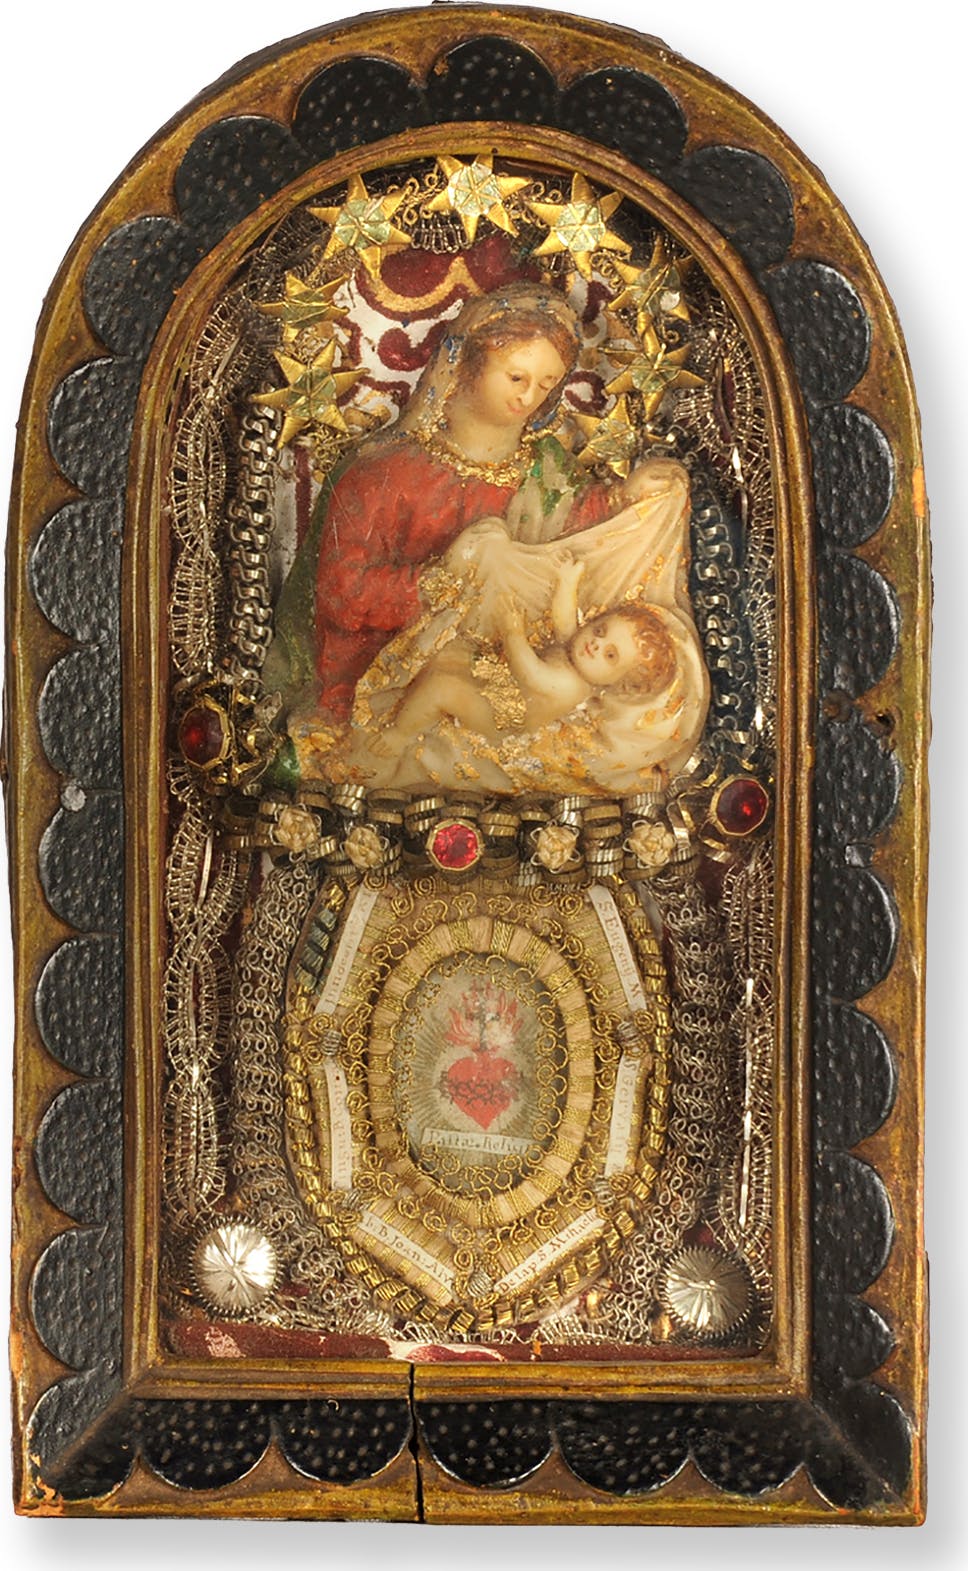 Maria mit Kind, Klosterarbeit mit Reliquien, 19.5 x 11.8 x 4.3 cm, Herkunft unbekannt, wohl frühes 19. Jh.